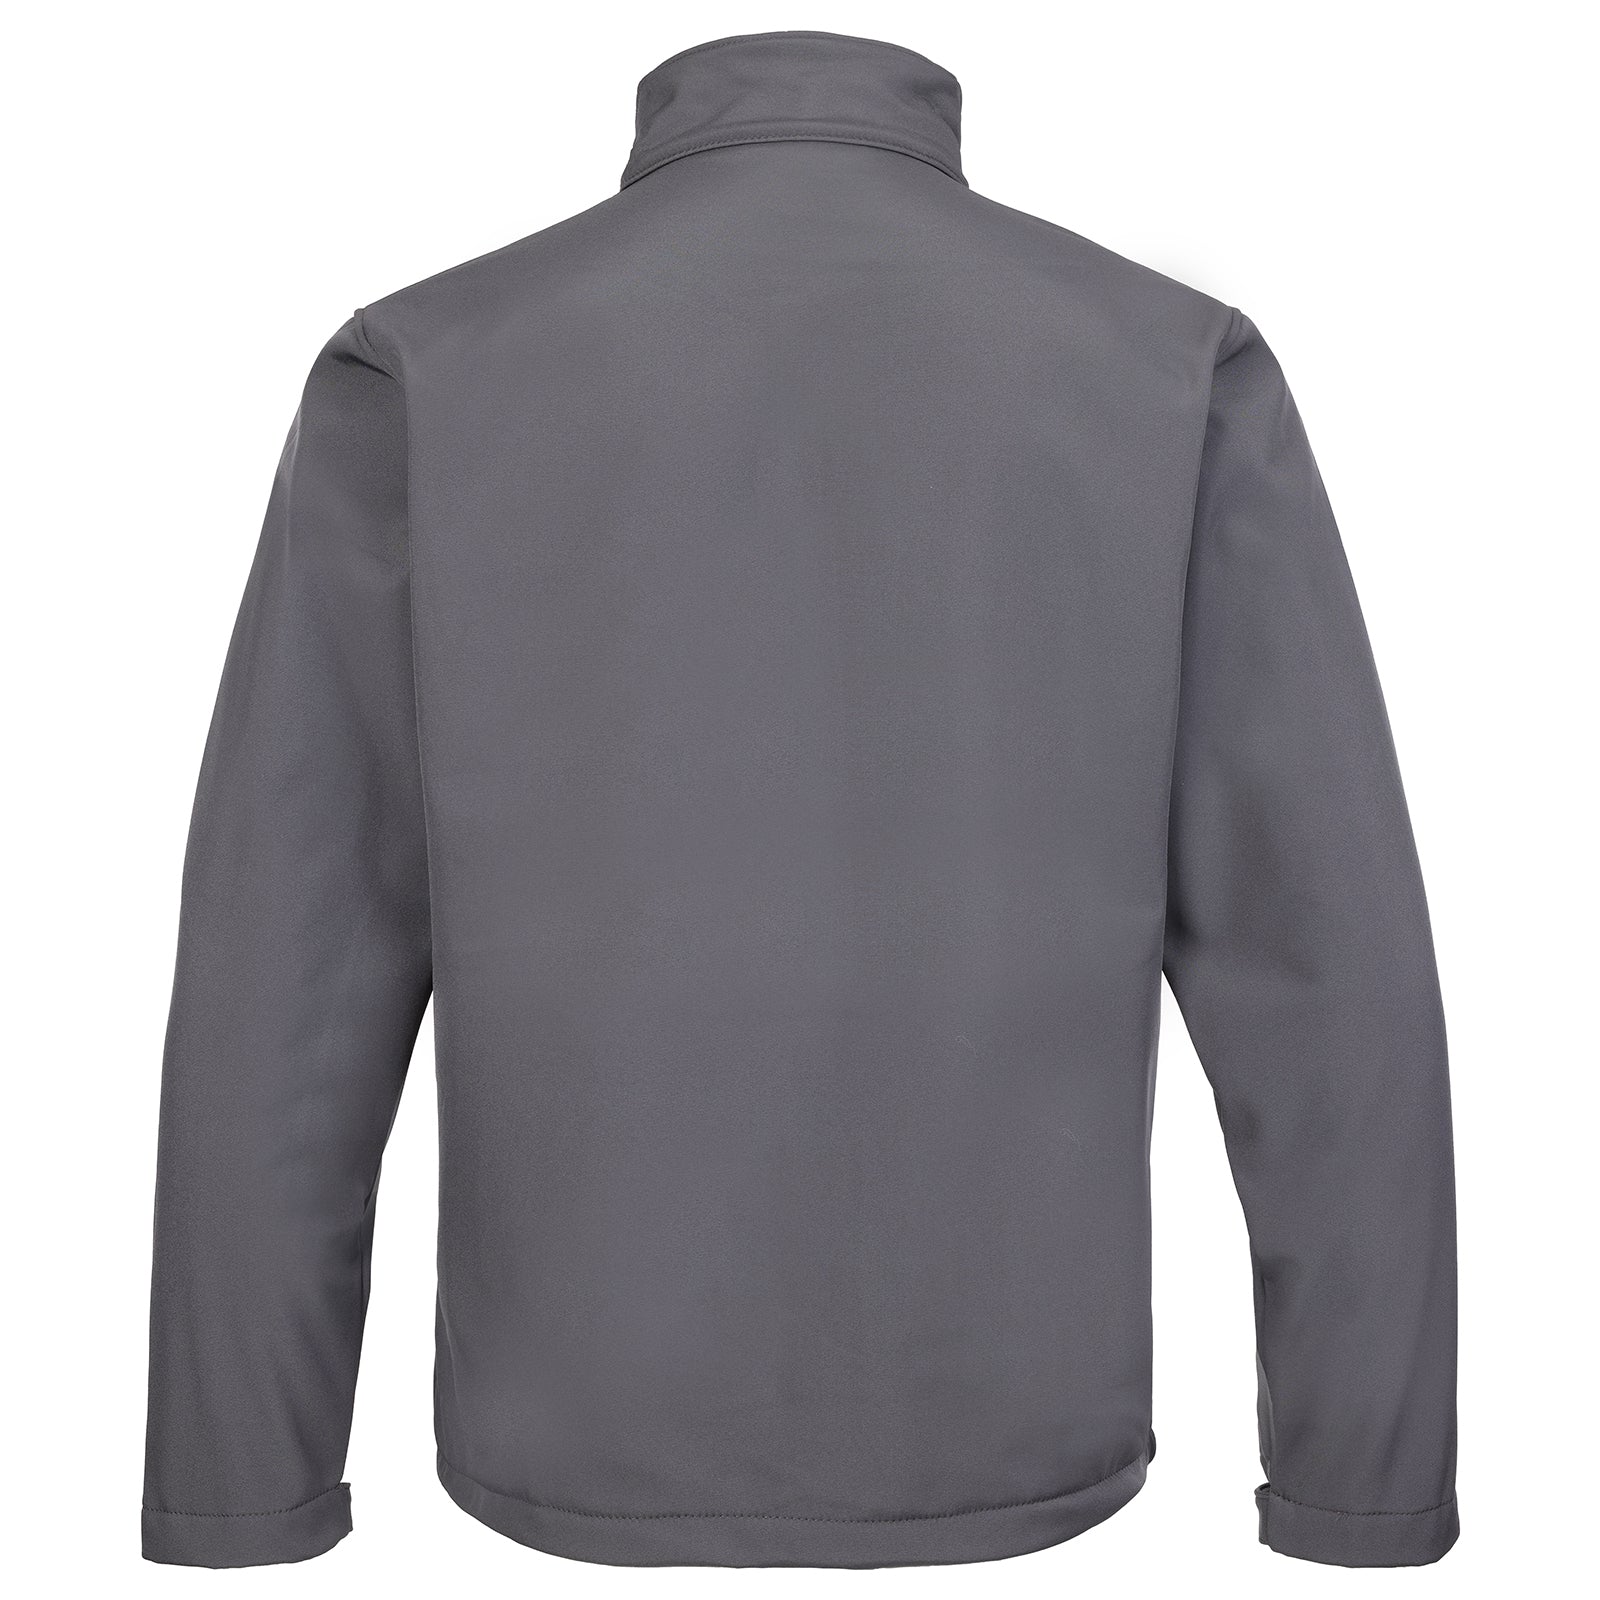 Fort Workwear Selkirk Waterproof Softshell Jacket